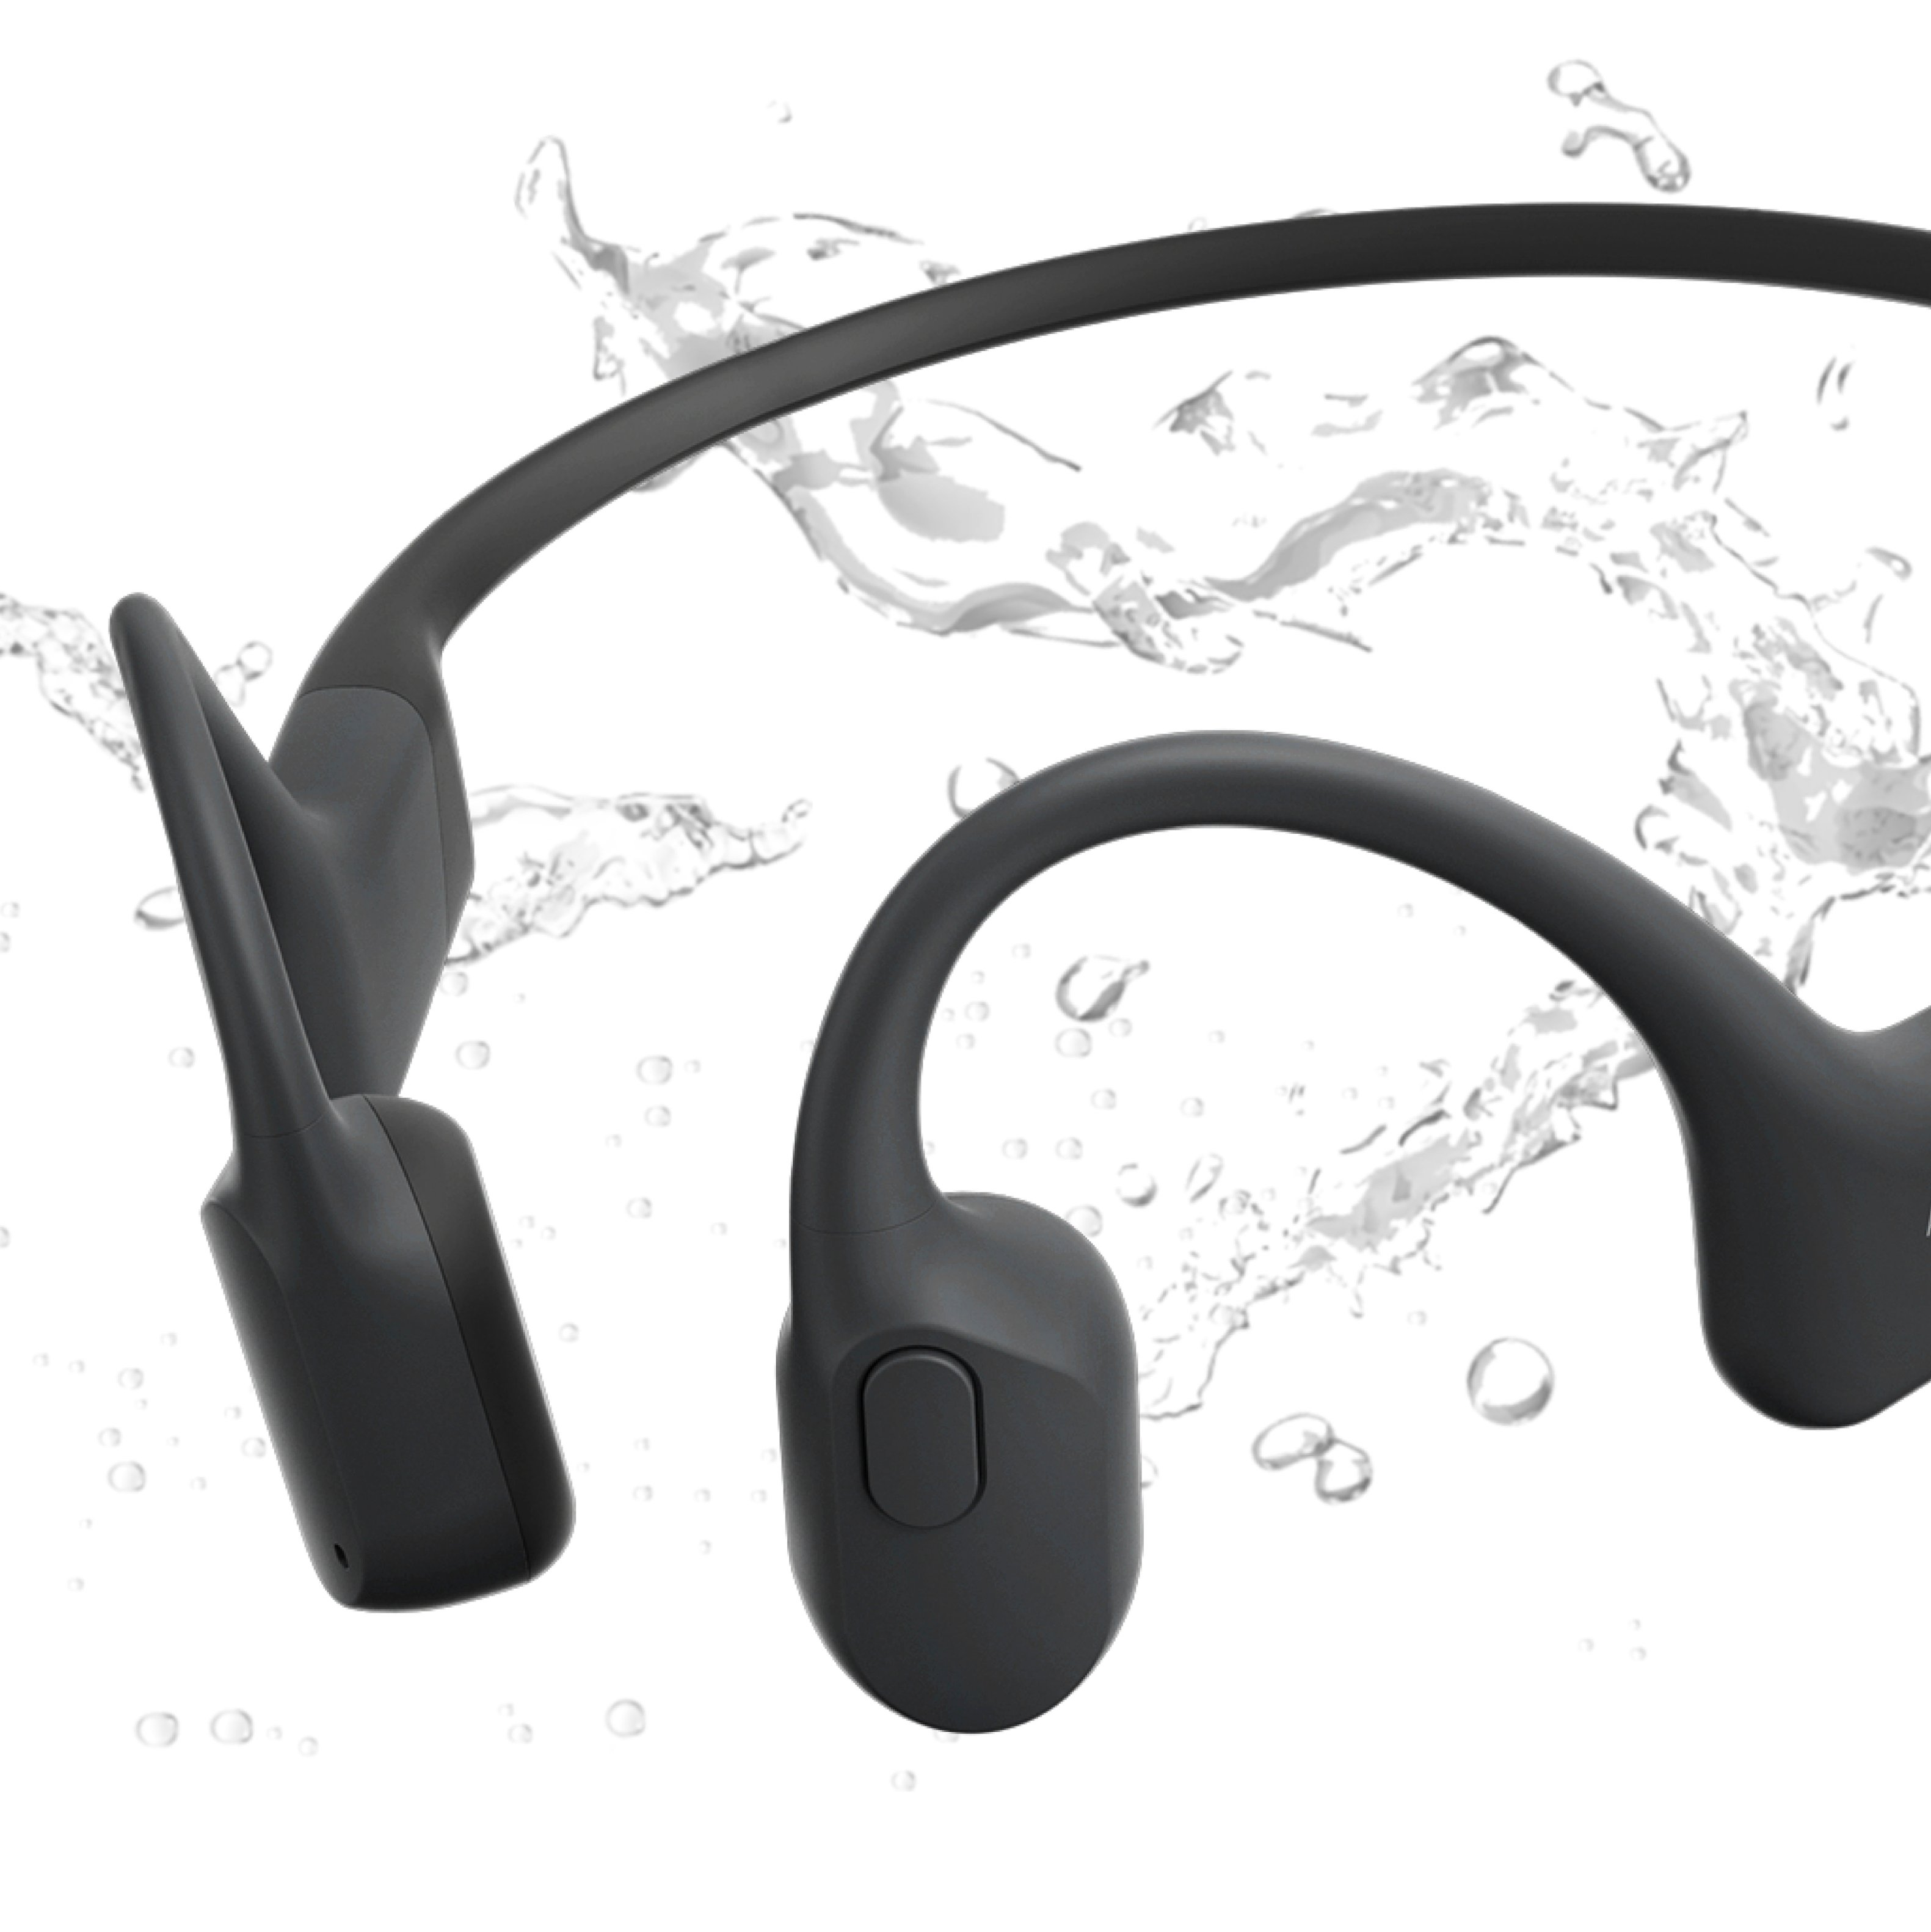 10 Reasons to Buy/Not to Buy Shokz OpenRun Waterproof Bone Conduction  Headphones